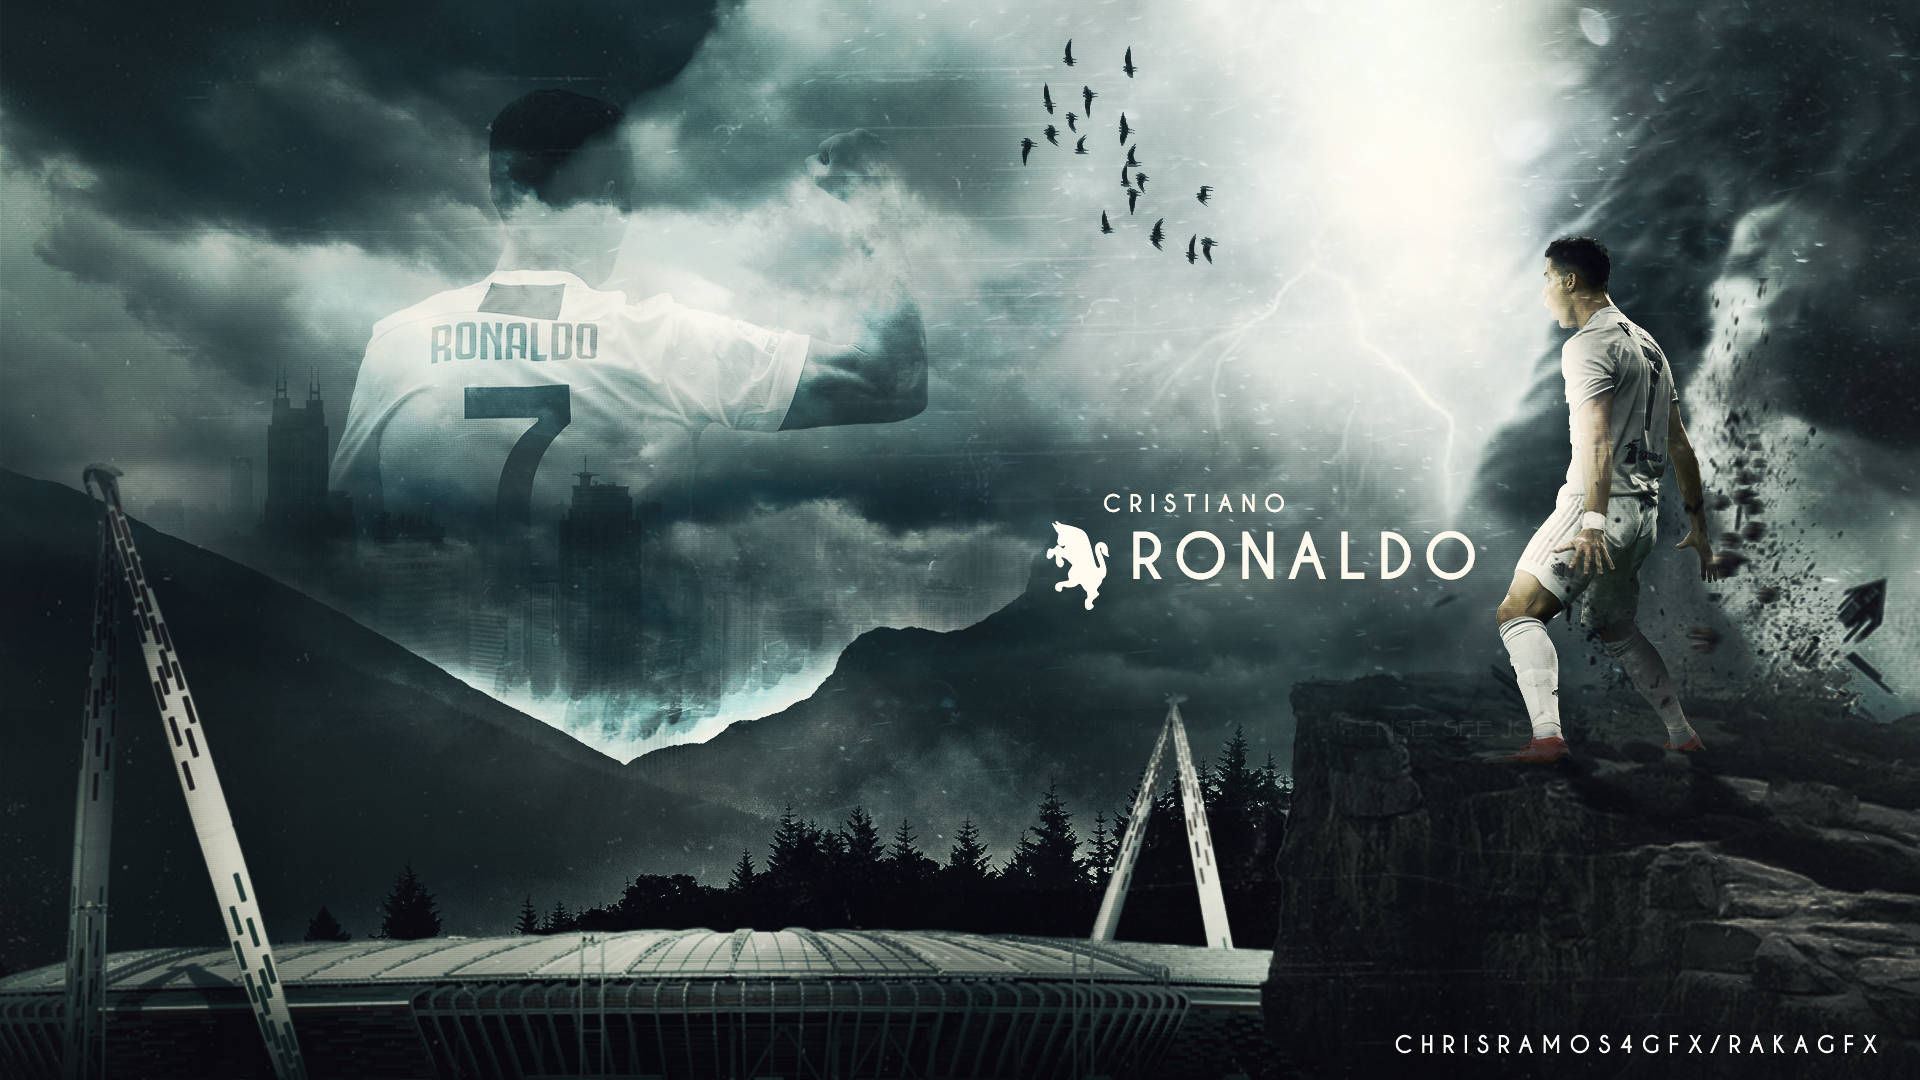 Thưởng thức tác phẩm nghệ thuật của Cristiano Ronaldo với bộ sưu tập hình nền động dành cho điện thoại của anh ấy. Tận hưởng màn hình của bạn với hình nền của một trong những cầu thủ vĩ đại nhất thế giới.